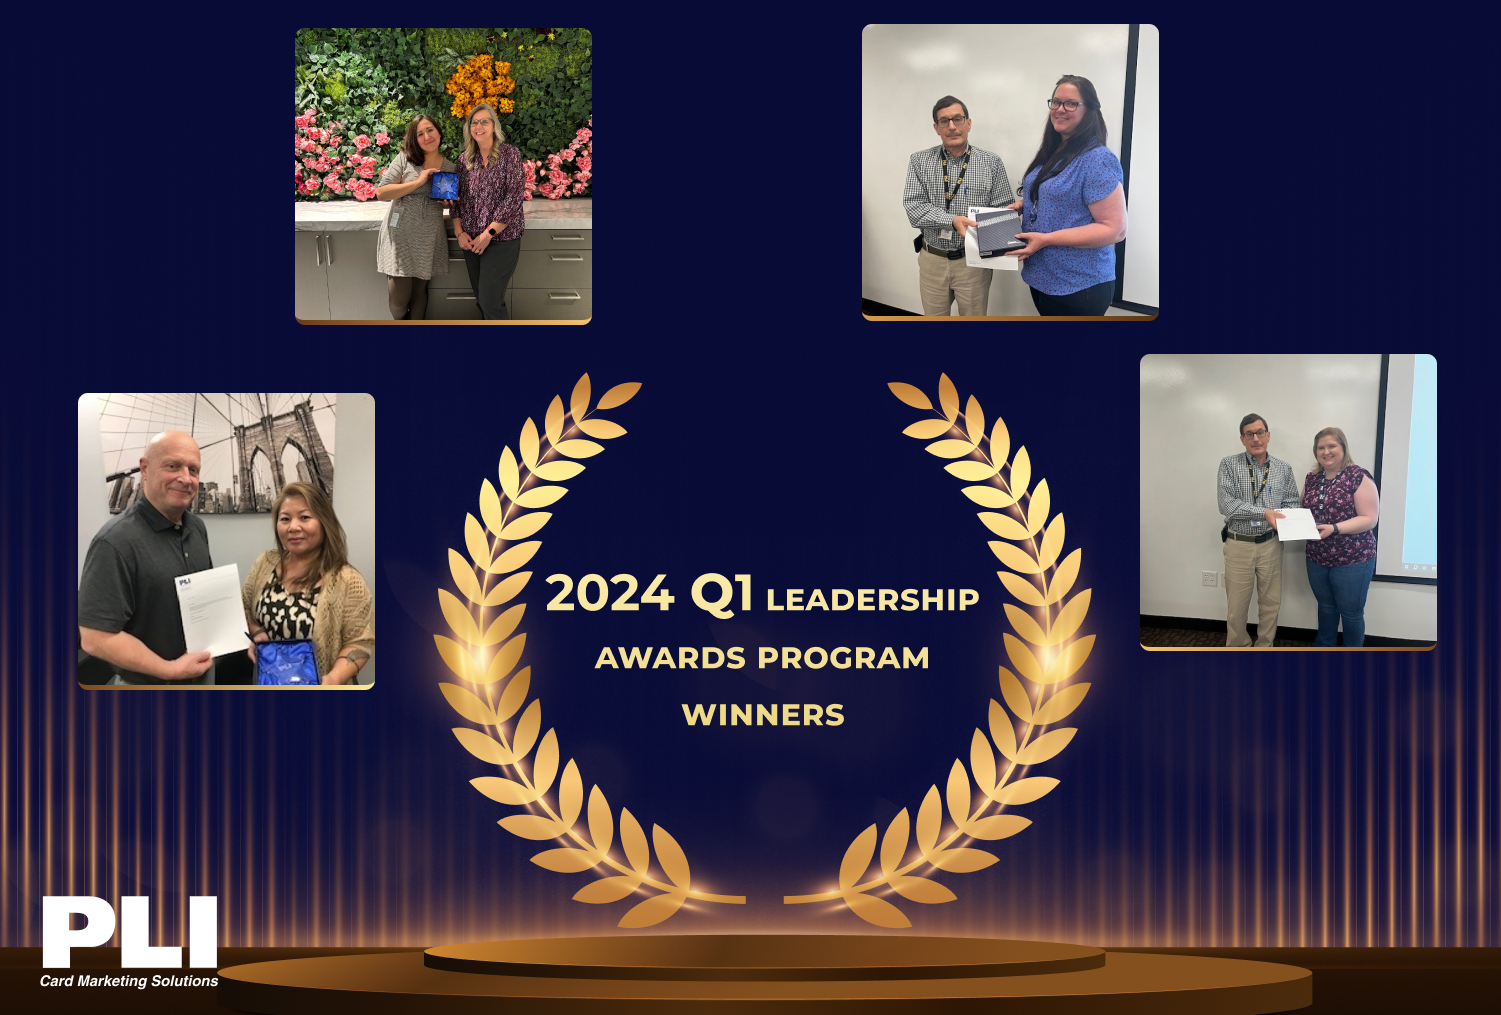 Leadership Awards Program Winners for Q1 2024